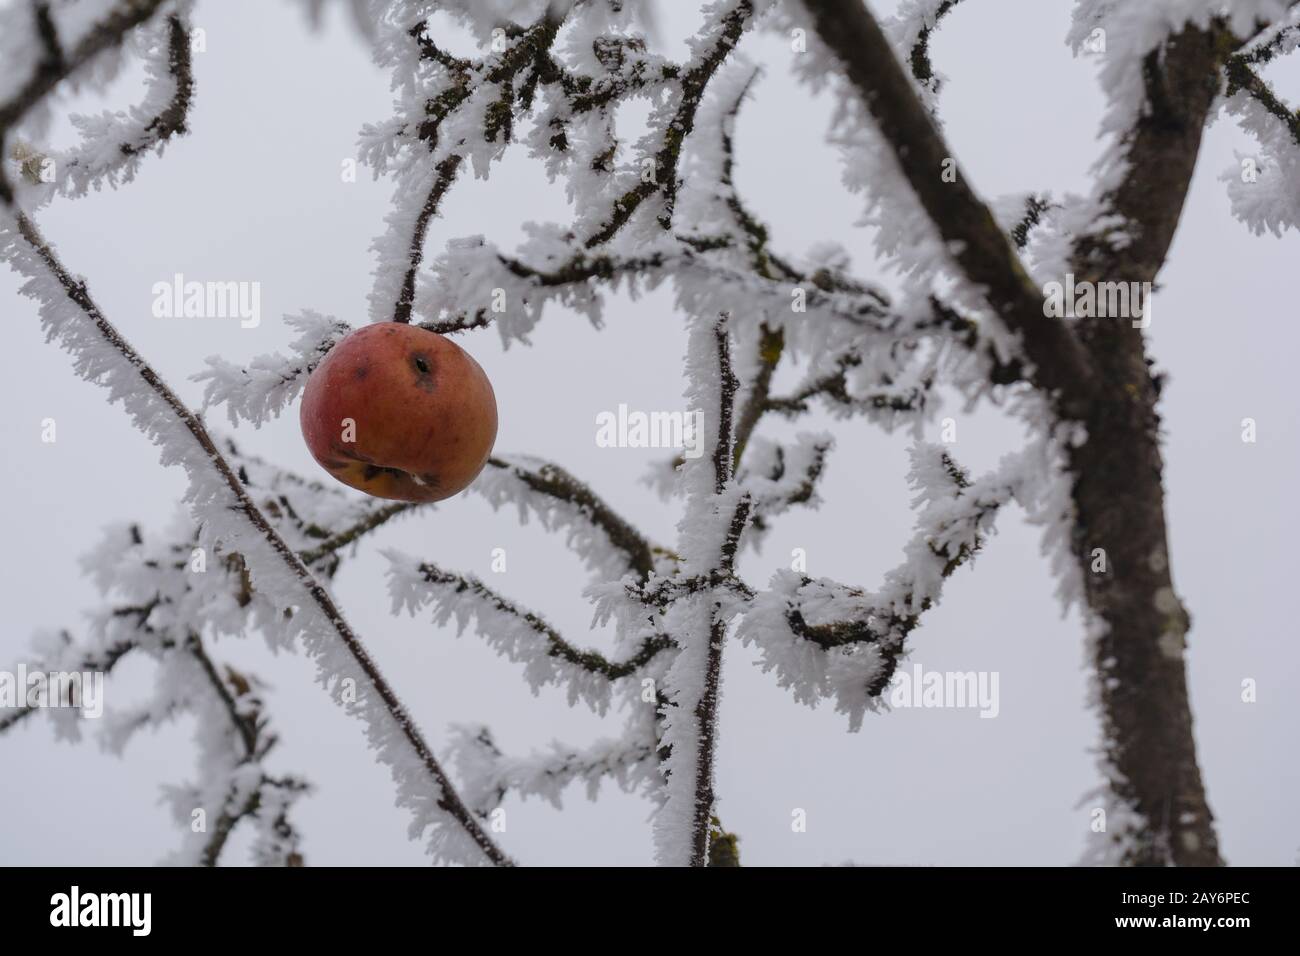 Vom Wurm gefressen, hängt im Winter im apfelbaum, wenn es sich um einen Huffrost handelt Stockfoto